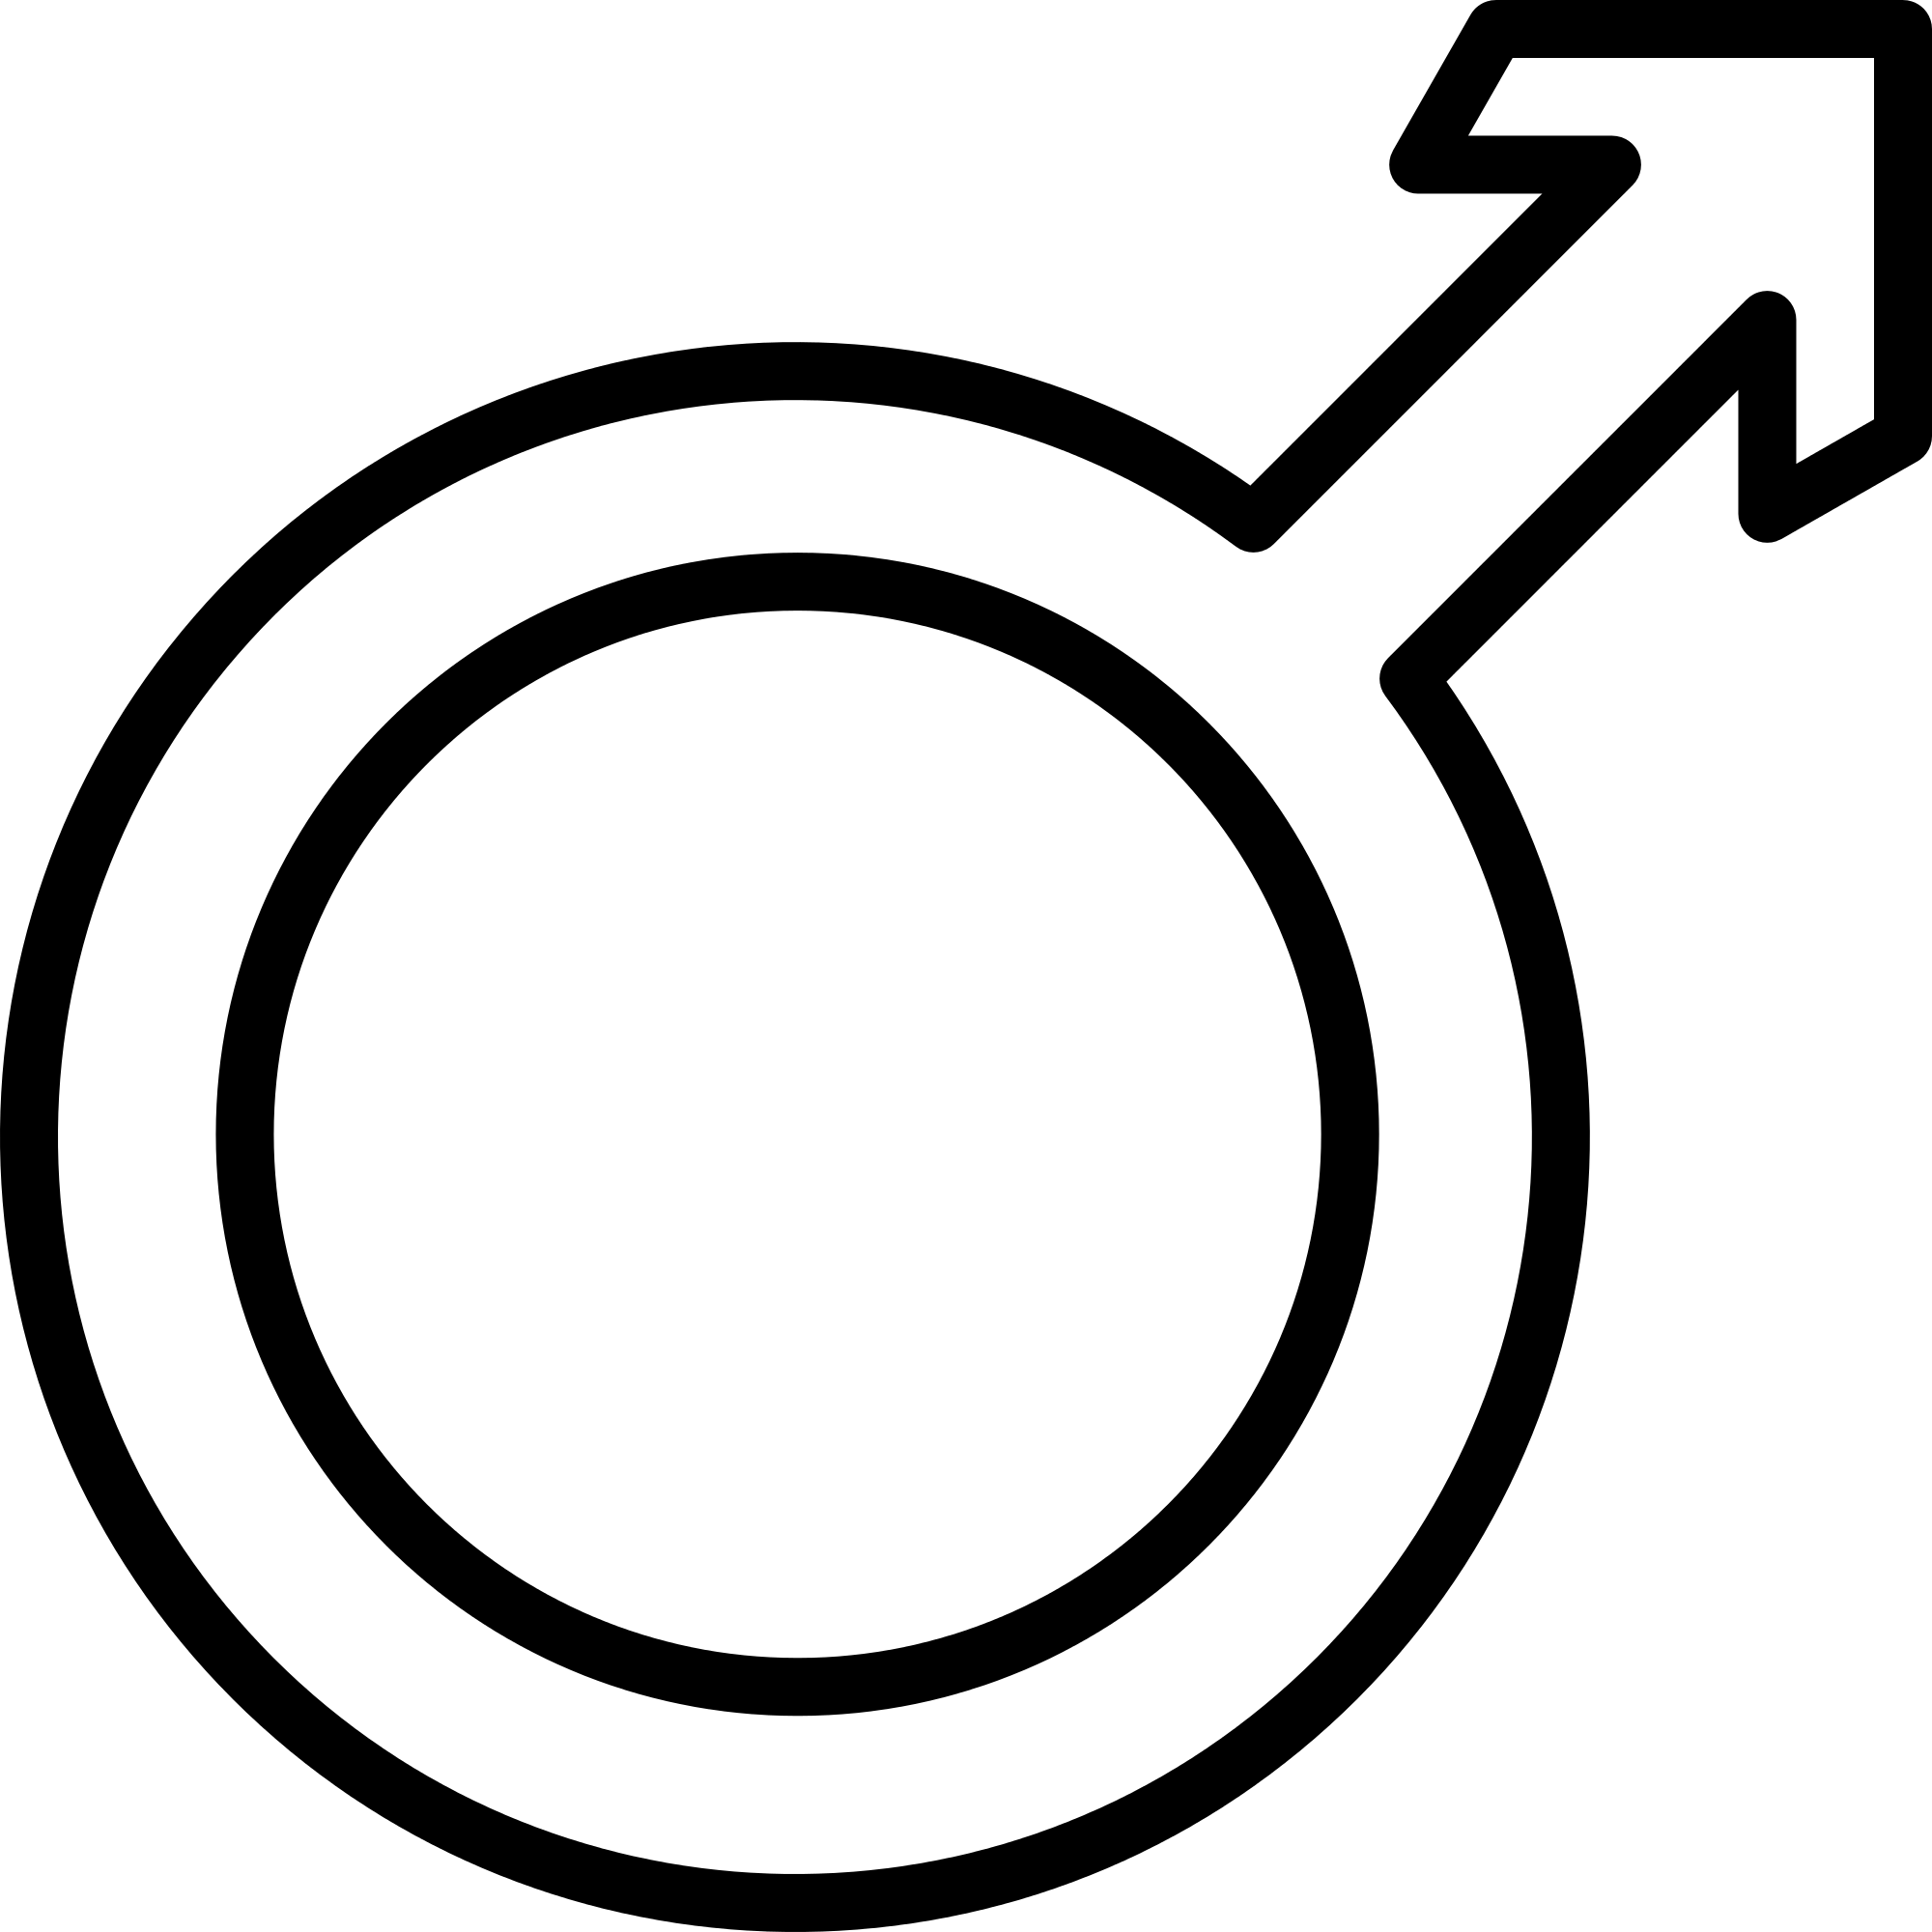 Human male sexuality - Wikipedia